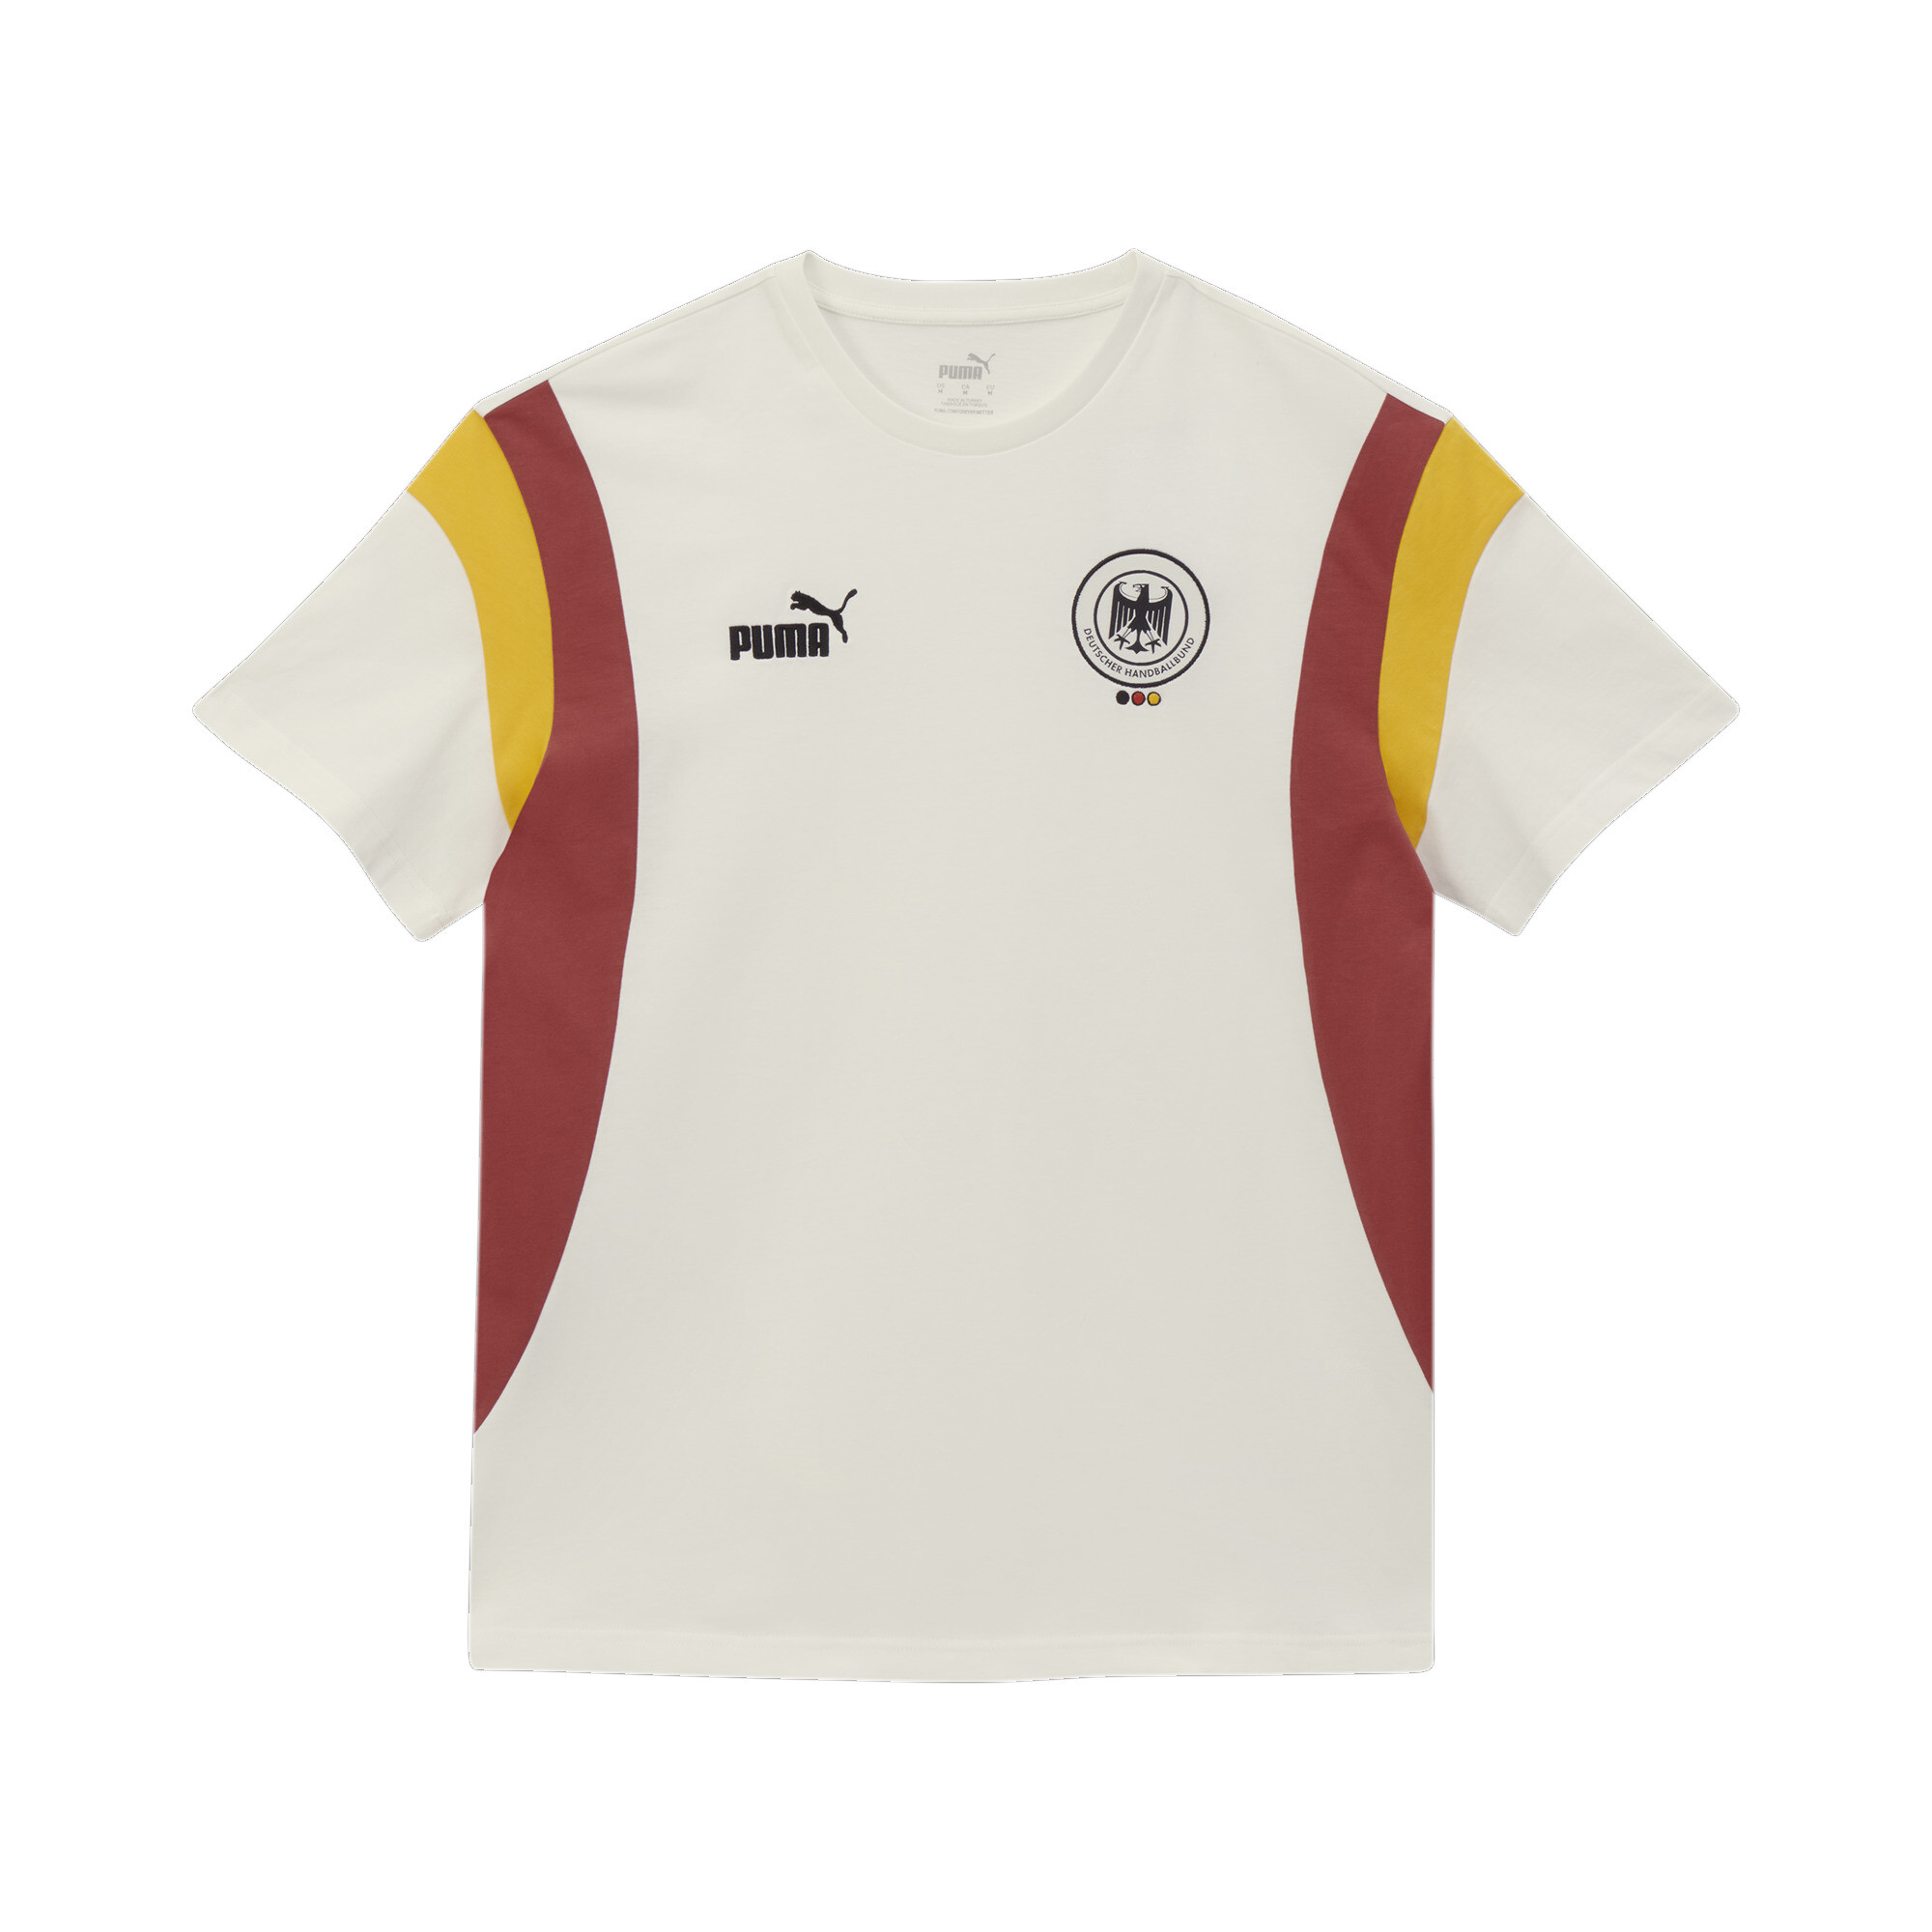 Men's Puma Deutscher Handball Bund Archive's T-Shirt, White, Size S, German